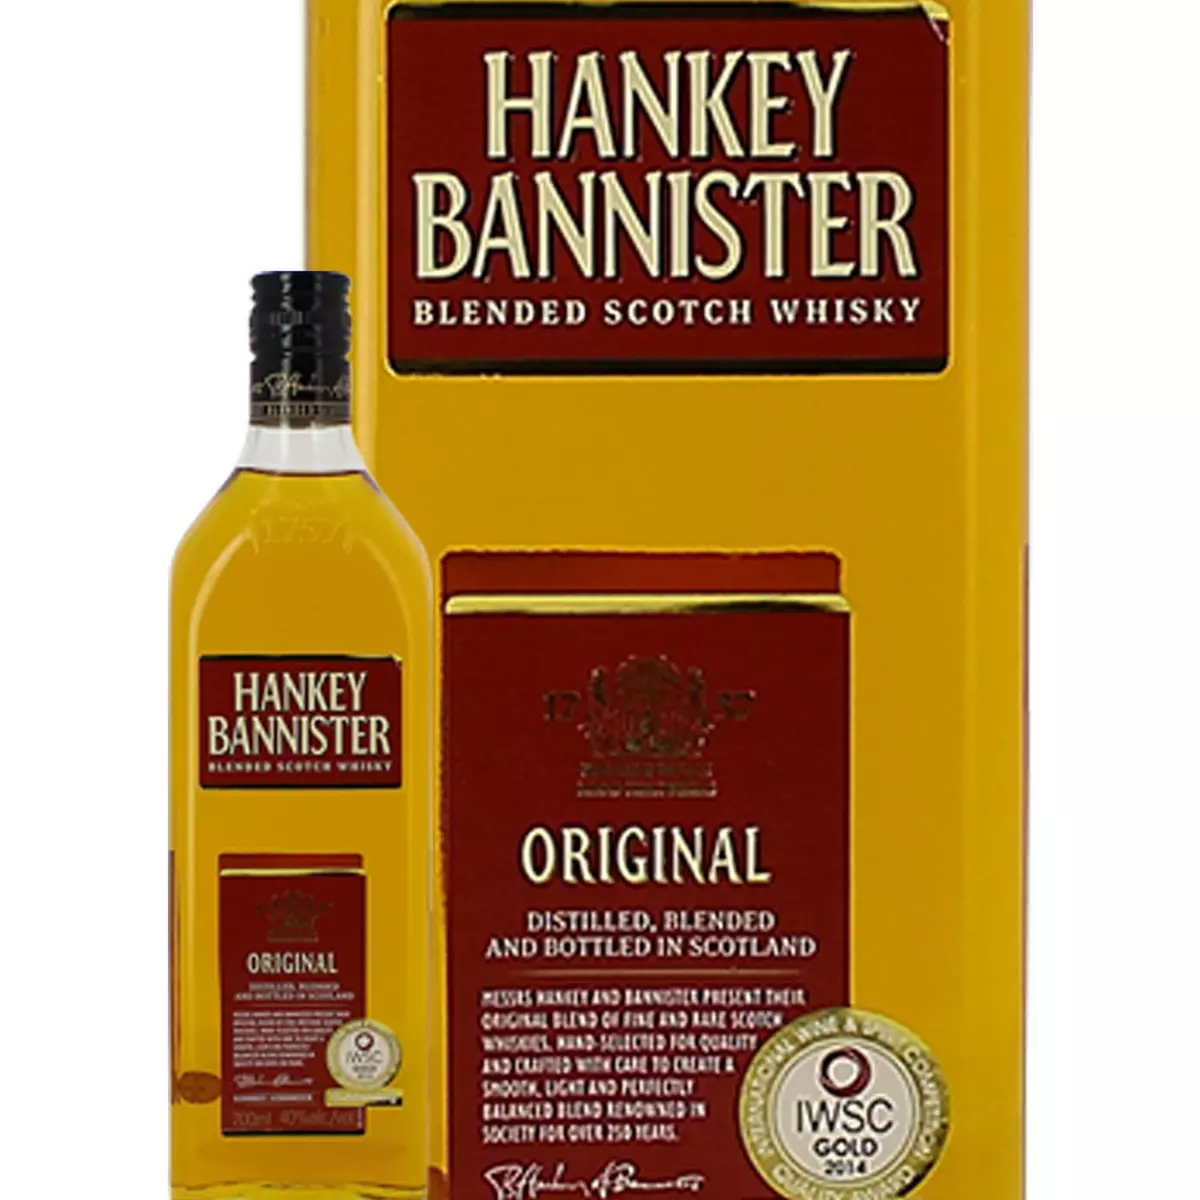 HANKEY BANNISTER Scotch whisky blended malt Hankey Bannister 40% 70cl